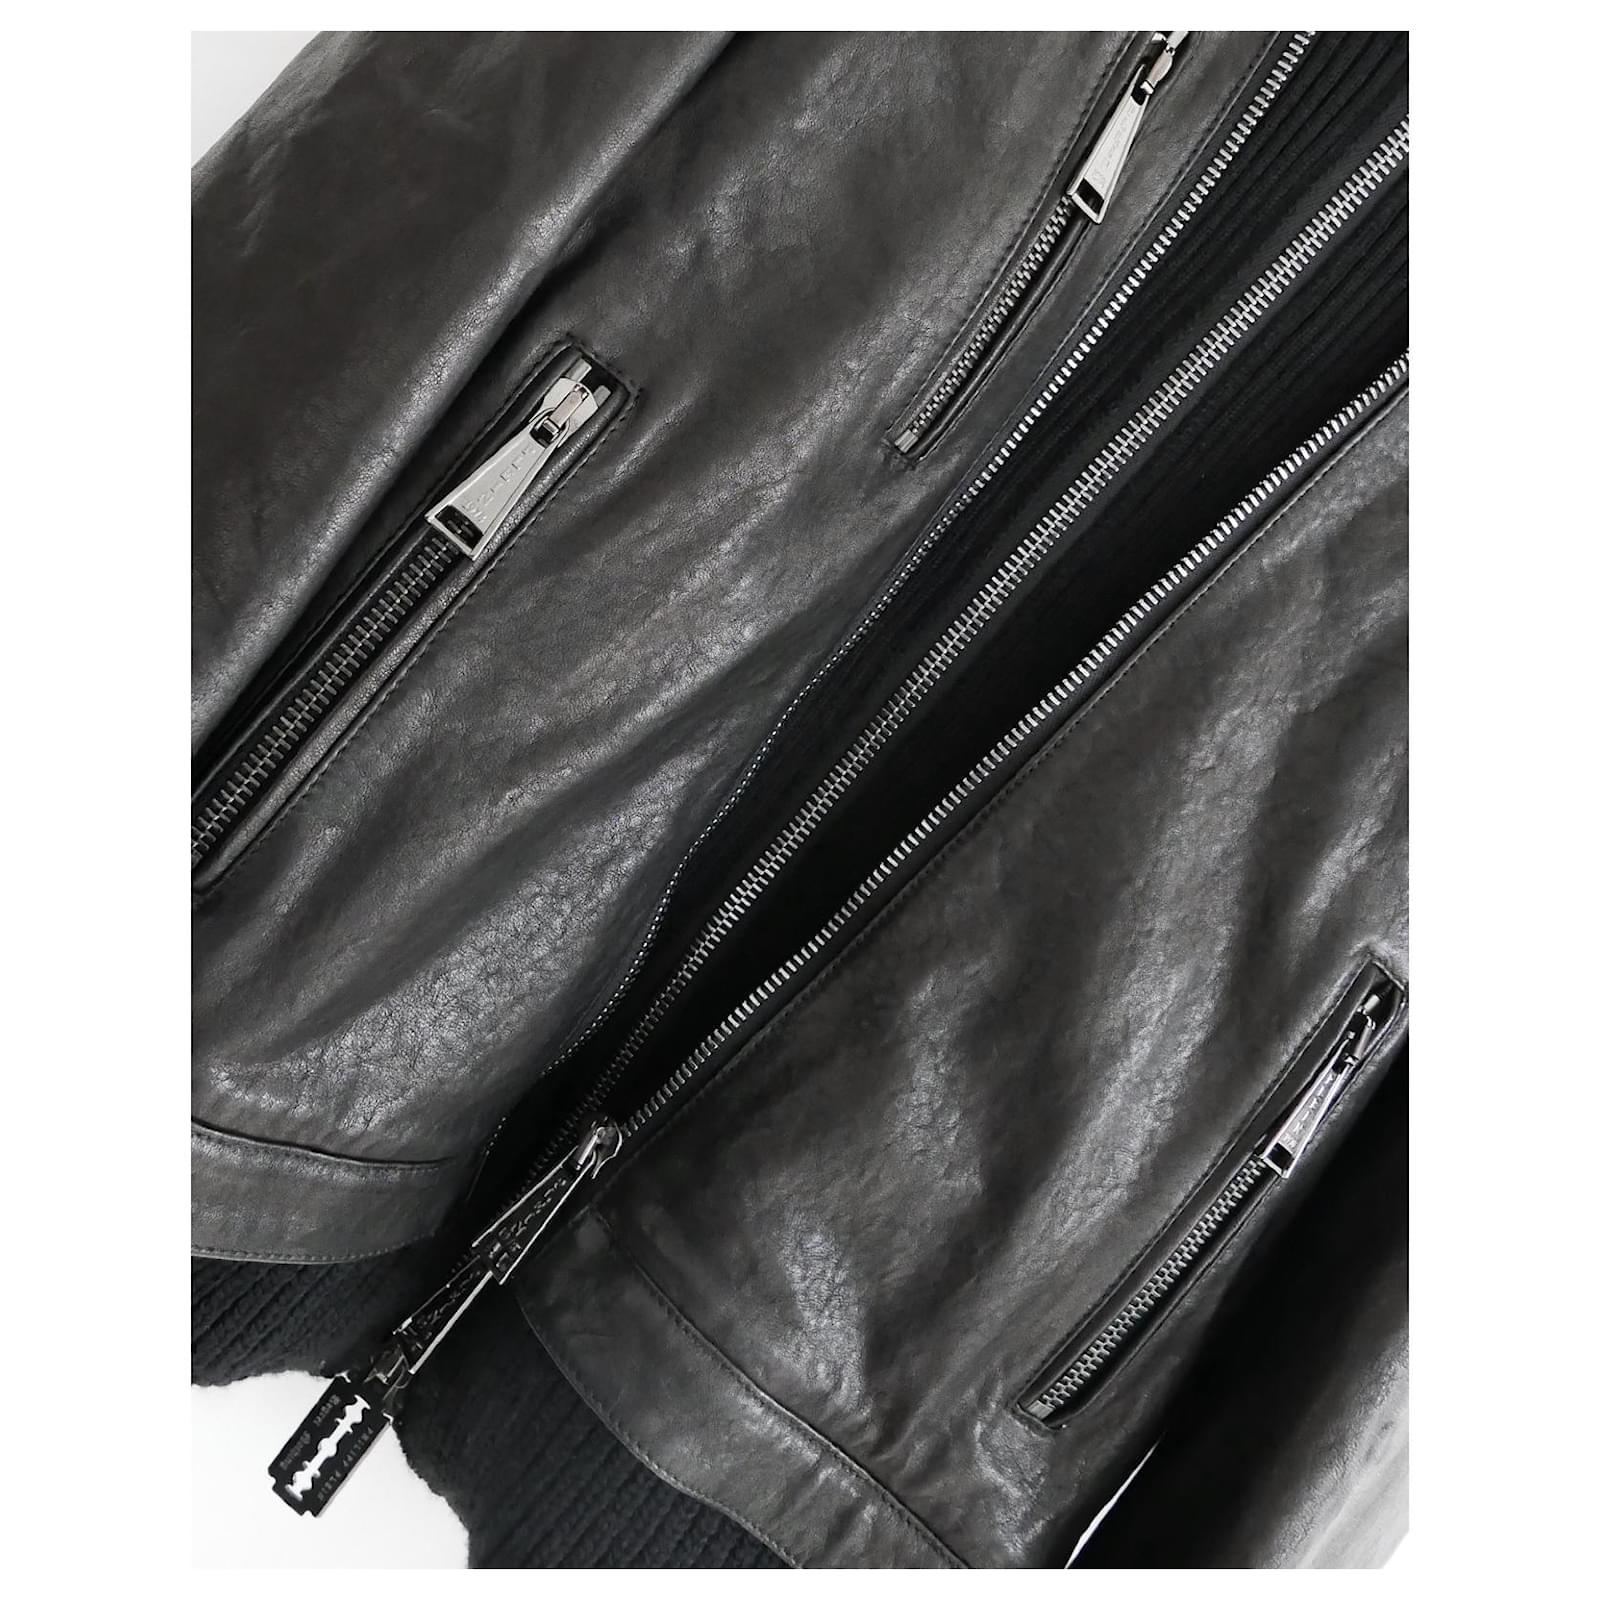 Die coolste Lagenlederjacke von Philipp Plein, gekauft für £4300 und ein paar Mal getragen. 

Hervorragend verarbeitet aus geschmeidigem schwarzem Leder mit einem Einsatz aus klobigem Wollpulli. Sie hat einen super coolen 3D-Totenkopf auf der Brust